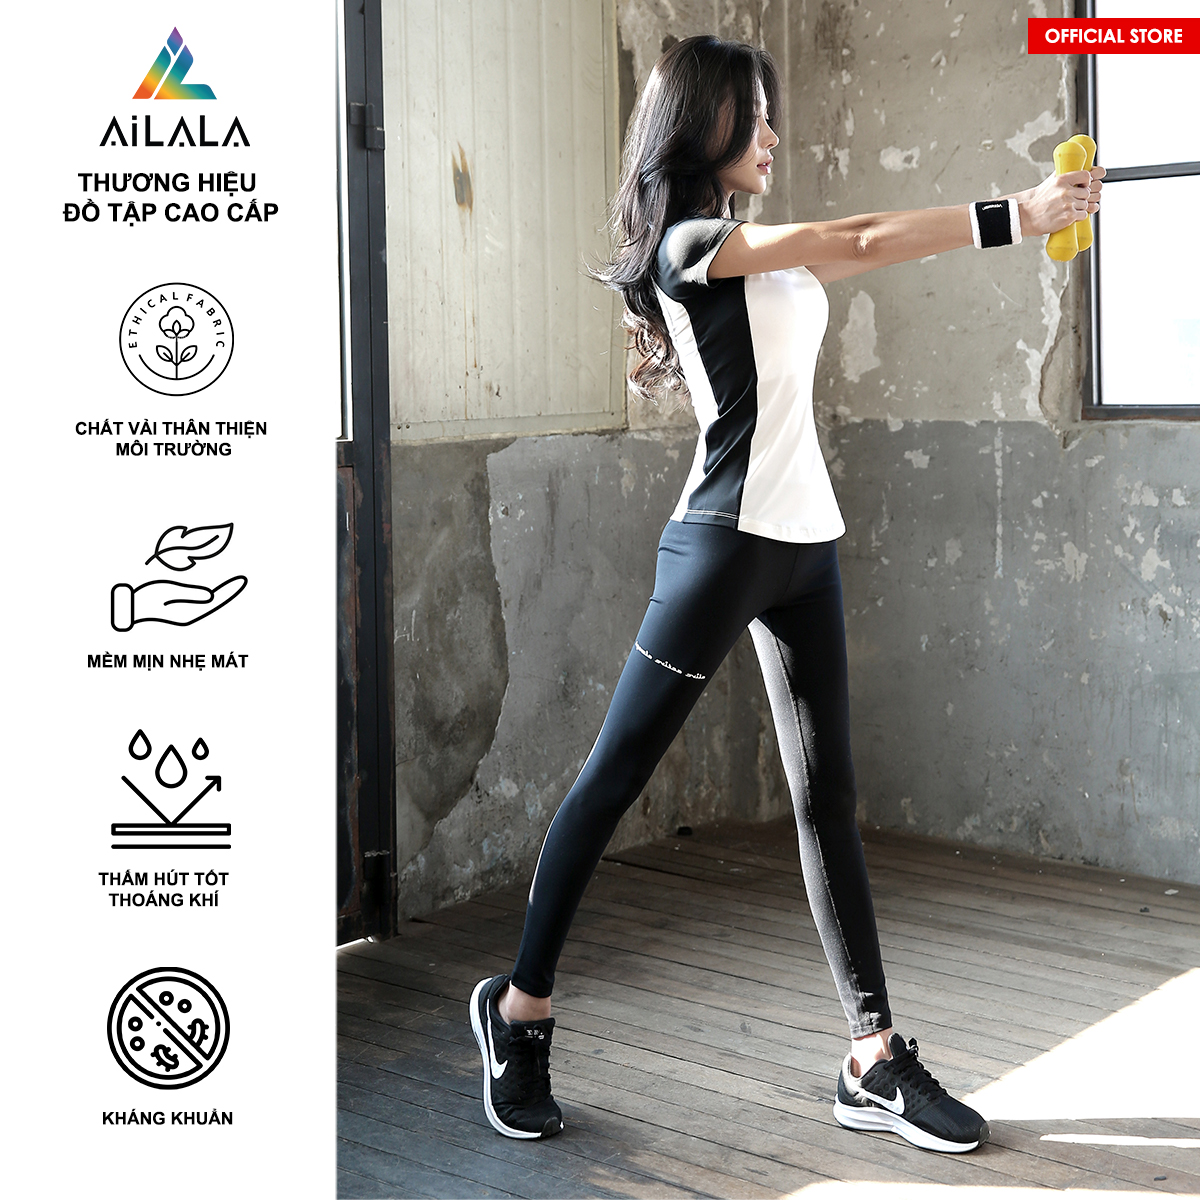 Bộ quần áo thể thao nữ AiLALA HK27, Đồ tập Yoga Gym Pilates, chất vải Hi-tech cao cấp